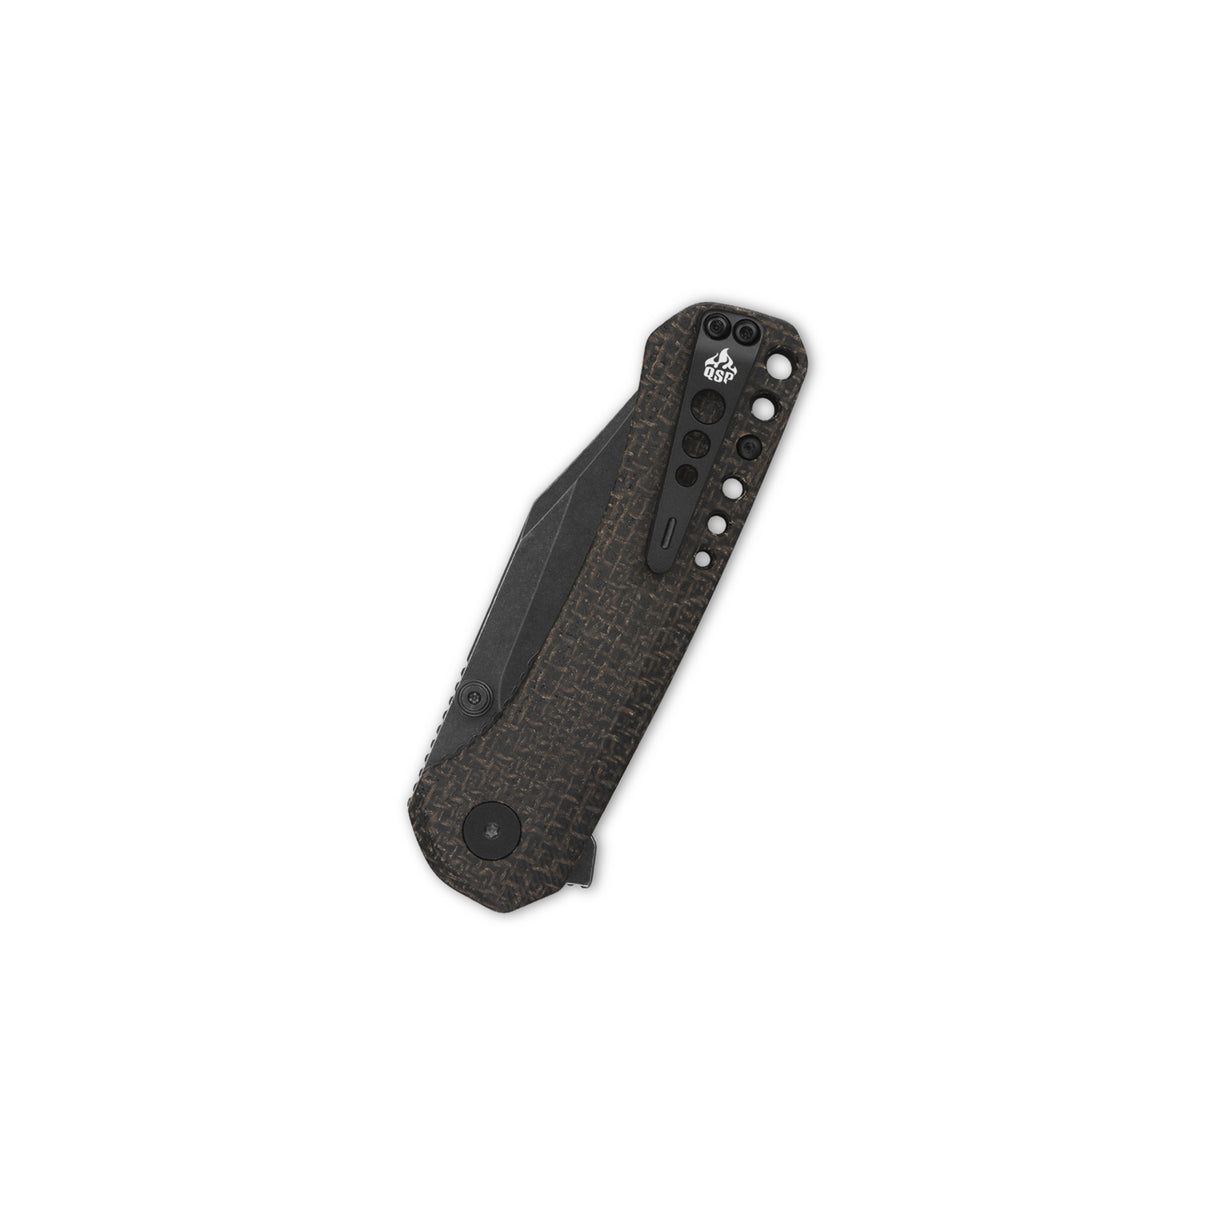 QSP Kestrel Pocket knife 14C28N blade Dark Brown Micarta handle